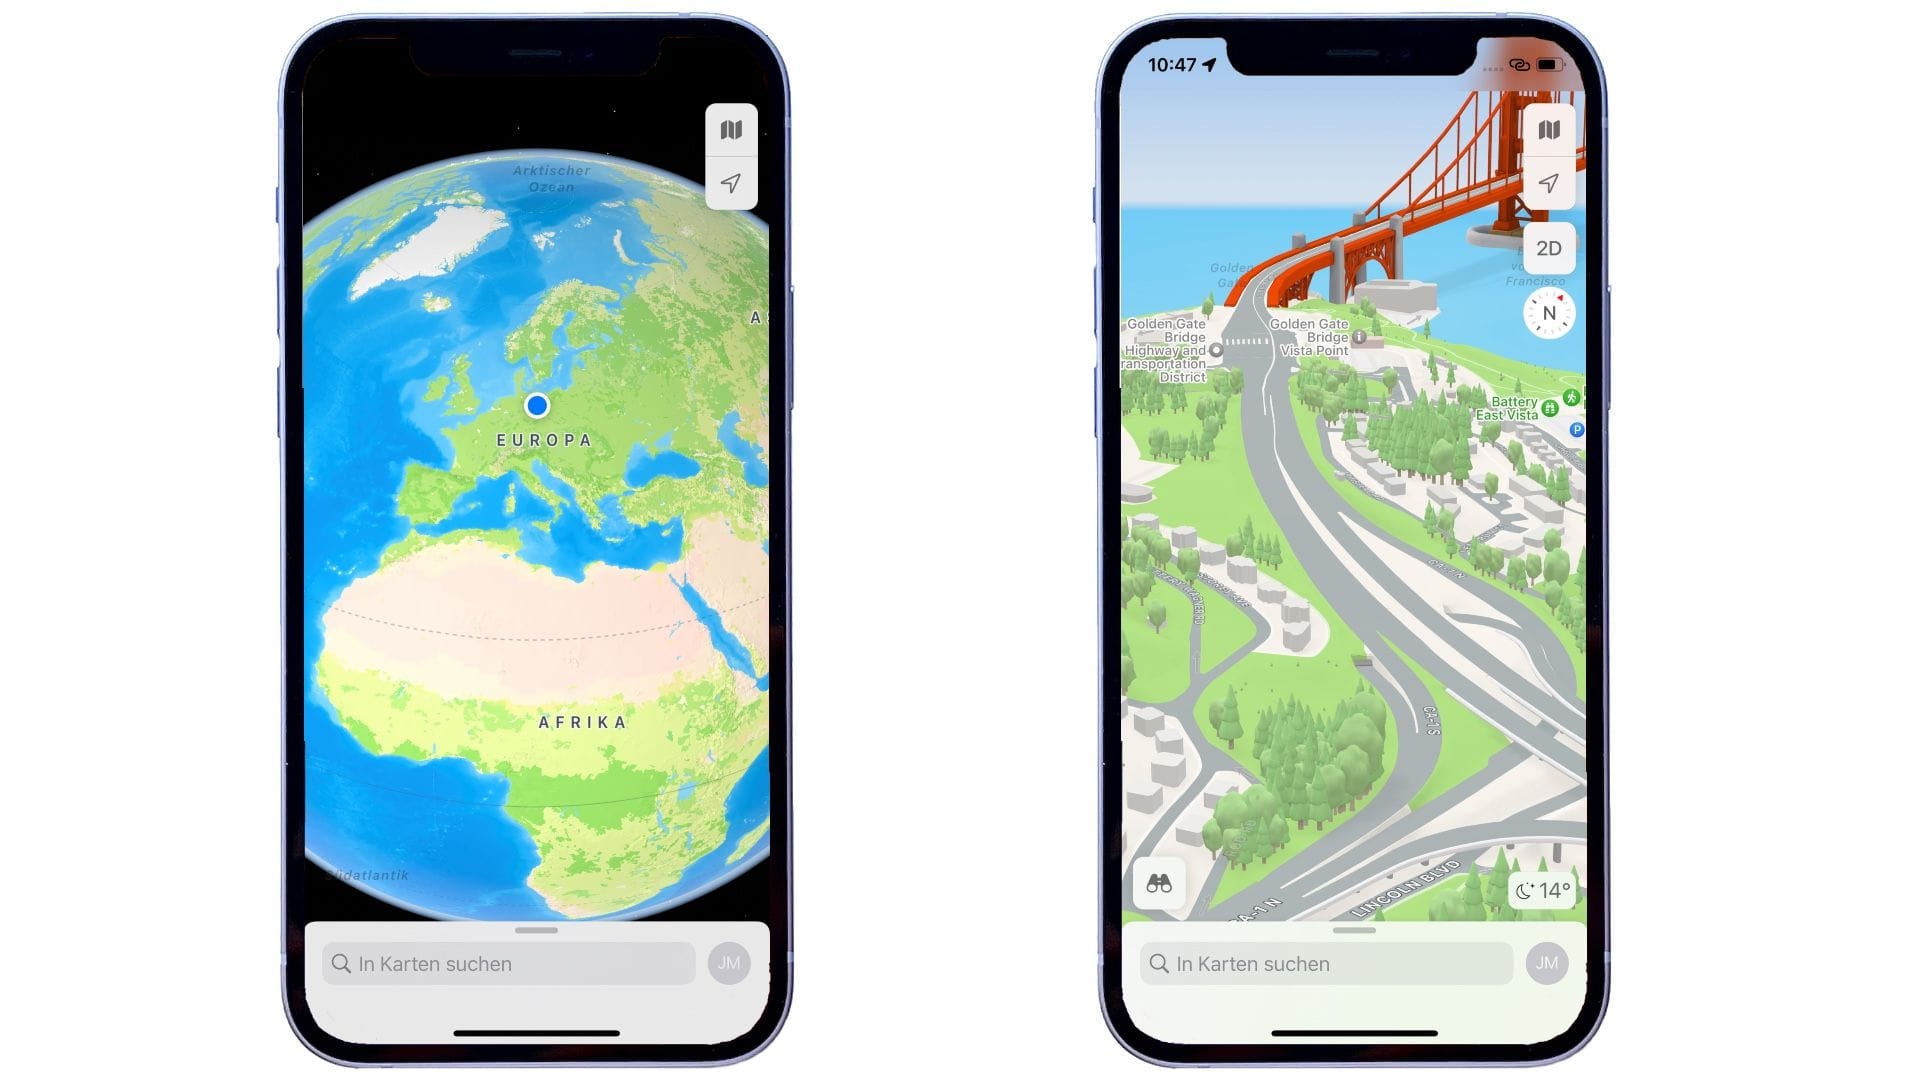 Apple Karten wurde erheblich aufgebohrt. Die tollsten Details gibt es bislang aber nur in einer Handvoll von Städten zu sehen. Allerdings wird jetzt die ganze Welt realistisch als Globus darstellt (links). Auf dem rechten Bild sieht man, wie Apple einzelne Gebäude in der 3D-Ansicht herausgearbeitet hat. Auch Topographie und Bäume sind sehr genau dargestelllt.